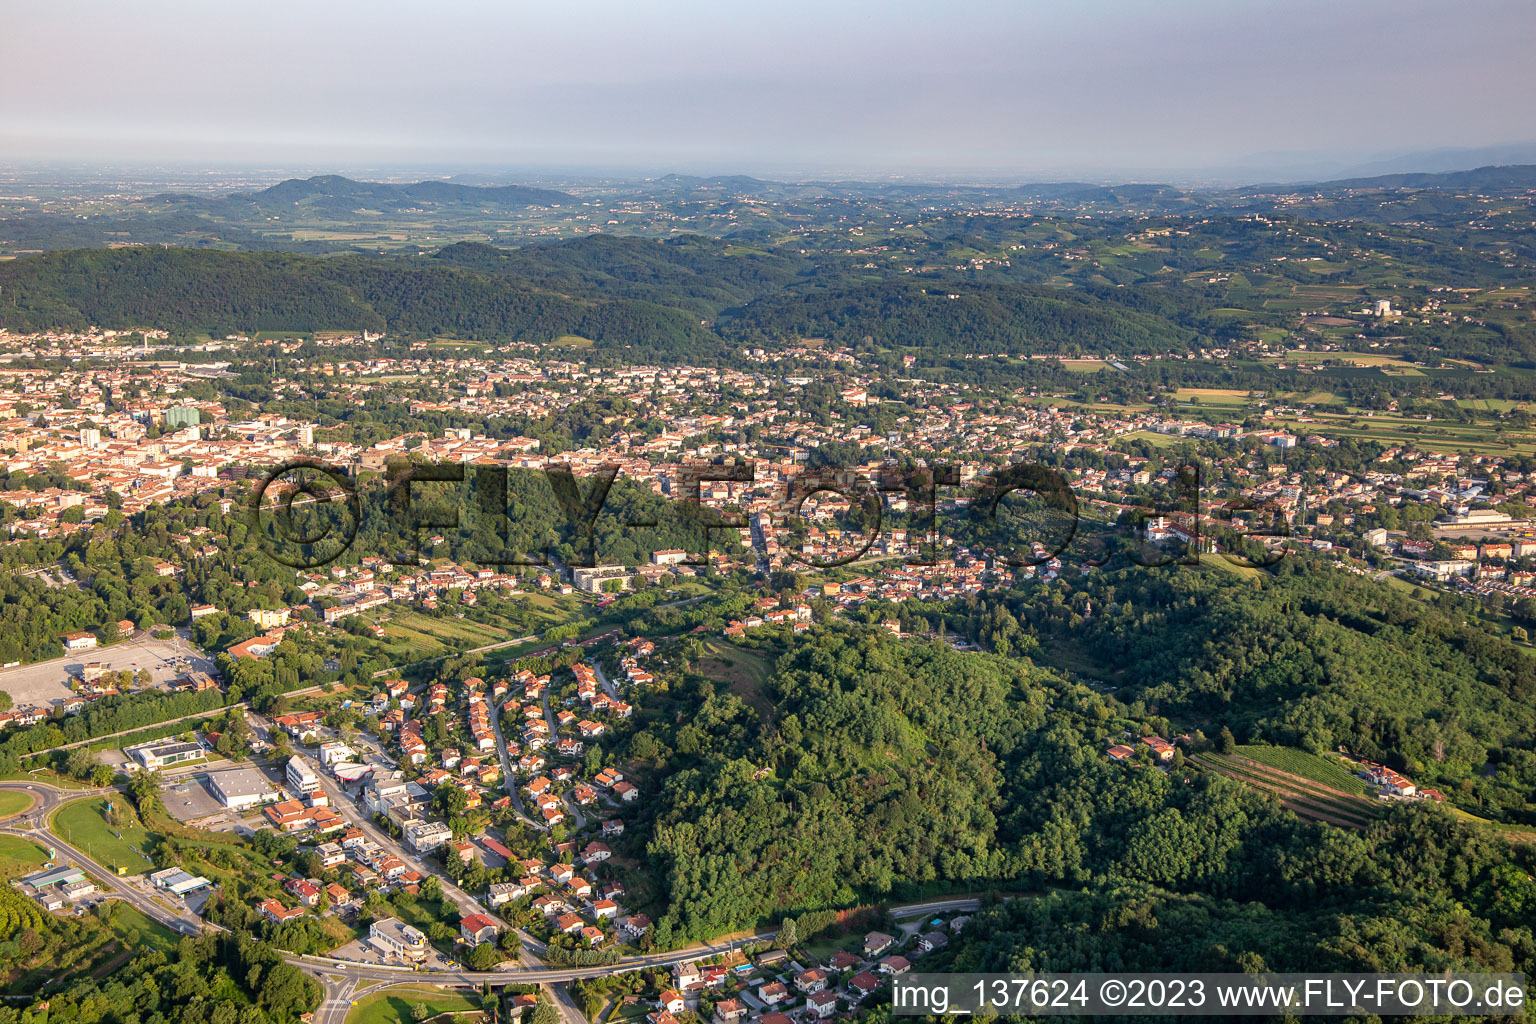 District Pristava in Nova Gorica in the state Slovenia, Slovenia